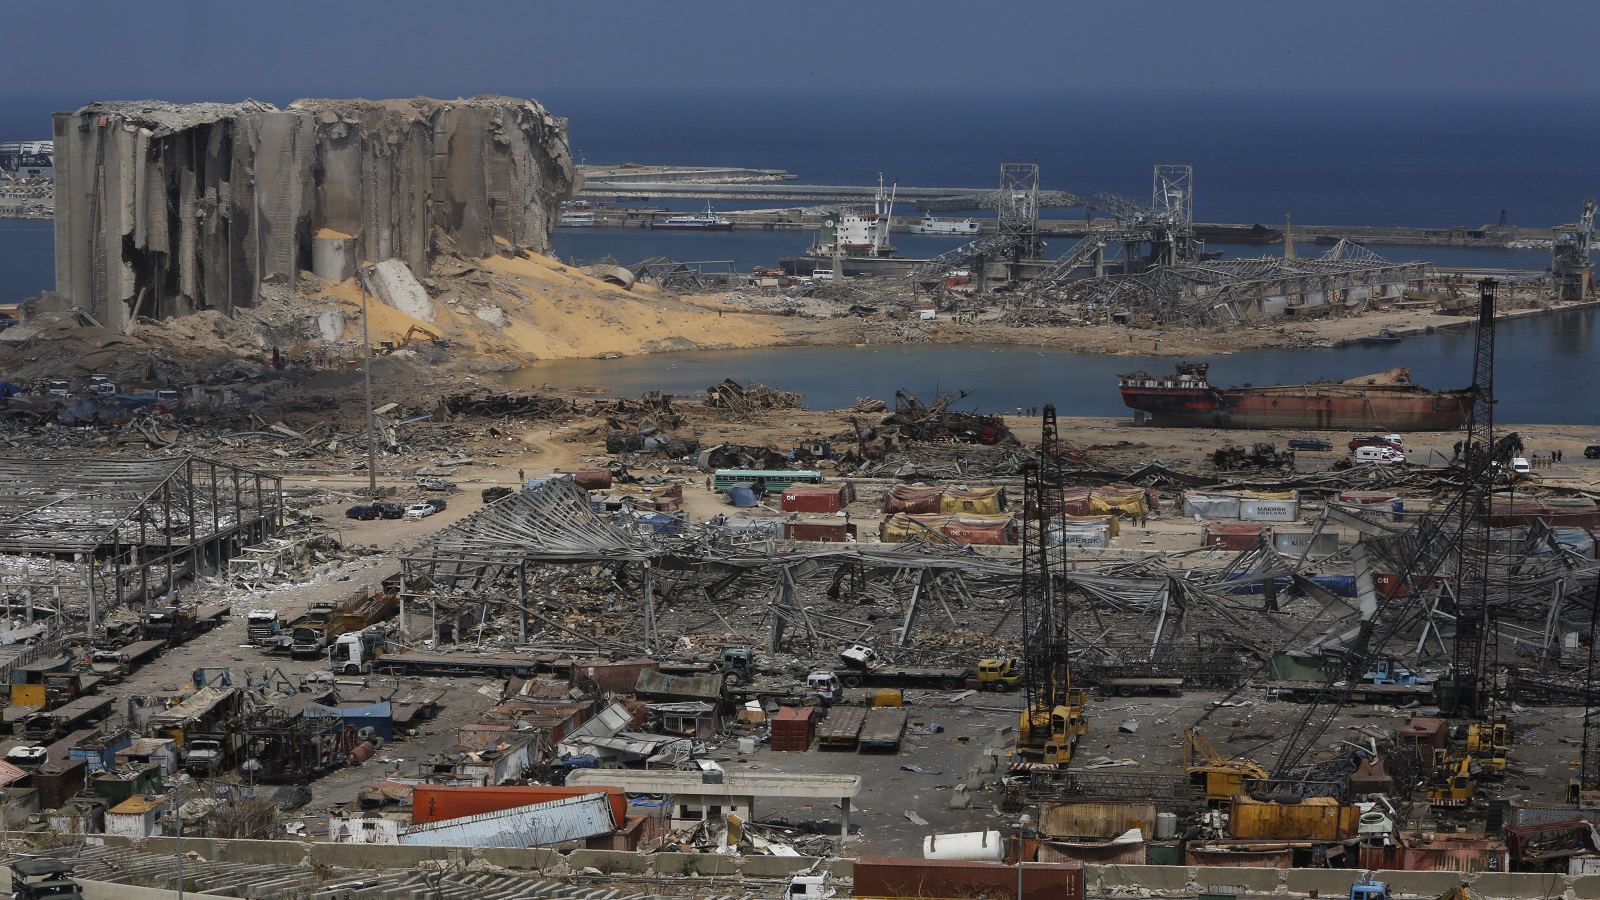 "المدن" تكشف: نظرية التلحيم كسبب لانفجار بيروت باطلة